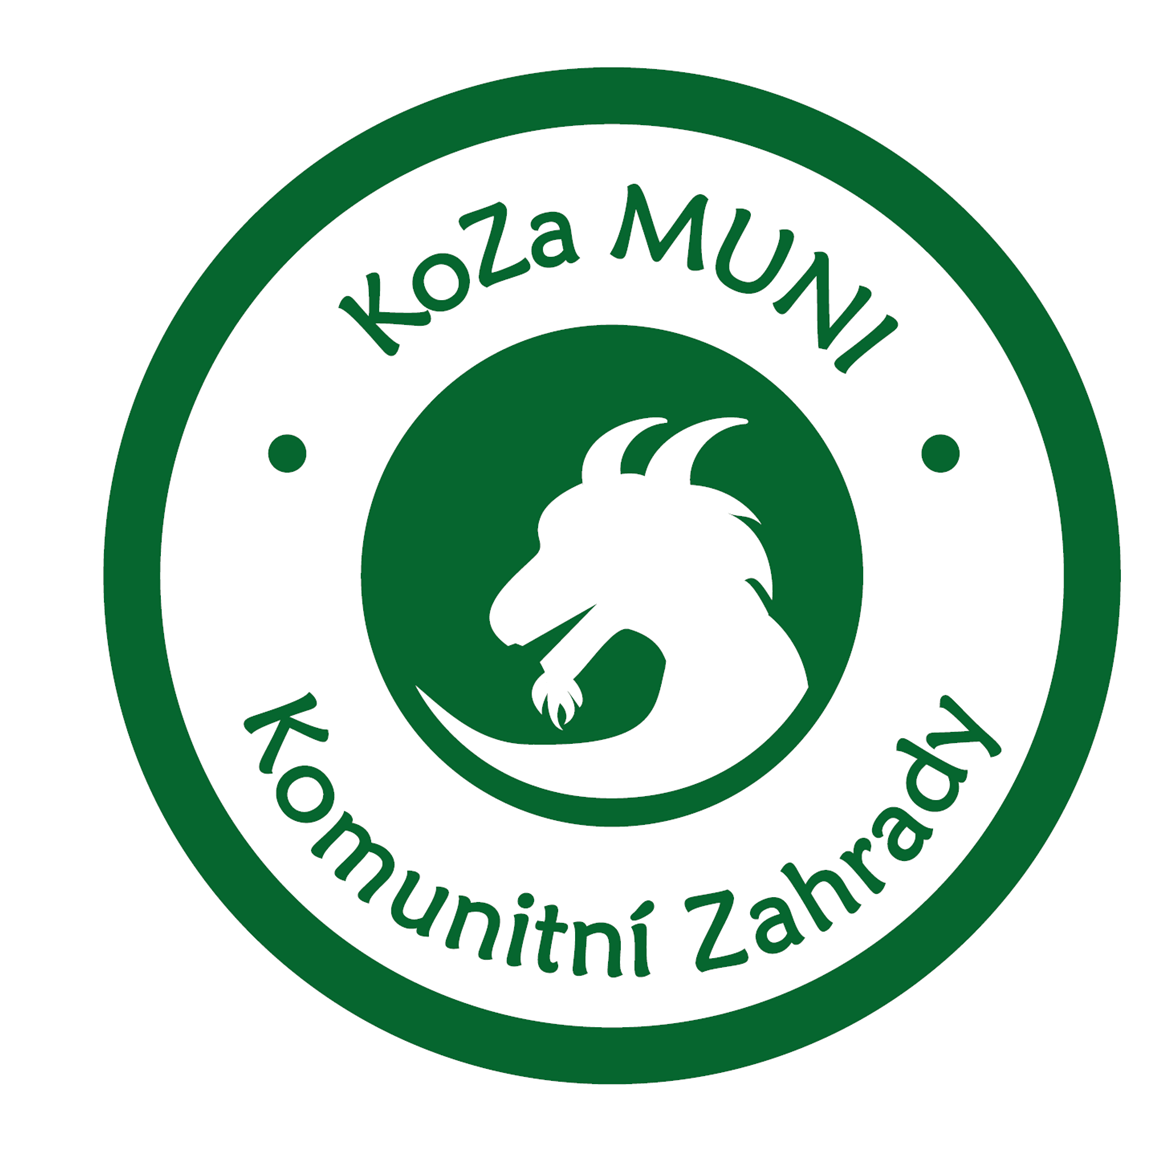 Spolek pro komunitní zahrady (KoZa MUNI) 